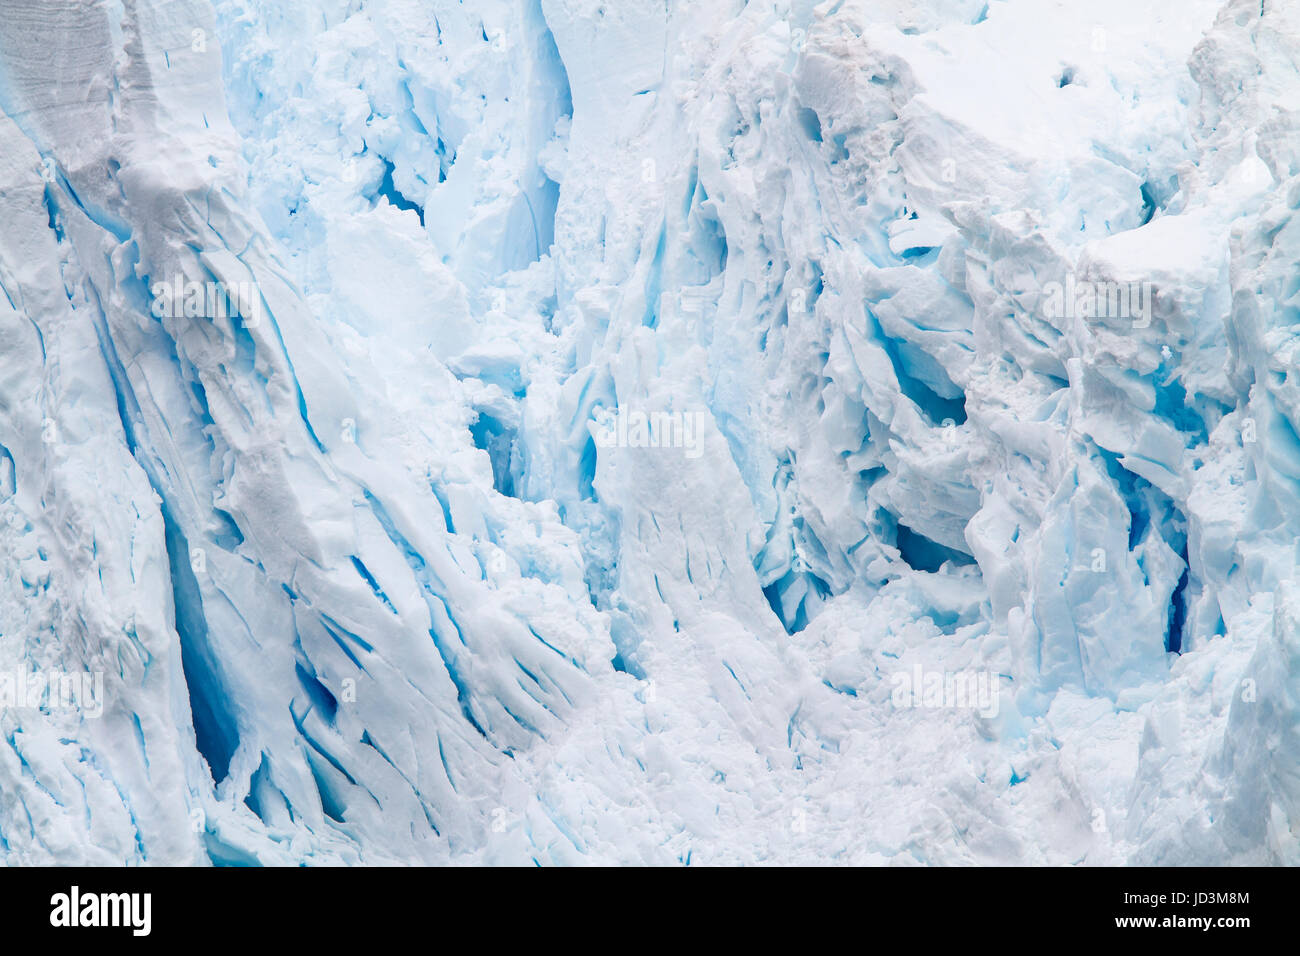 Antarctica landscape with blue ice iceberg, ice berg, icebergs. Stock Photo